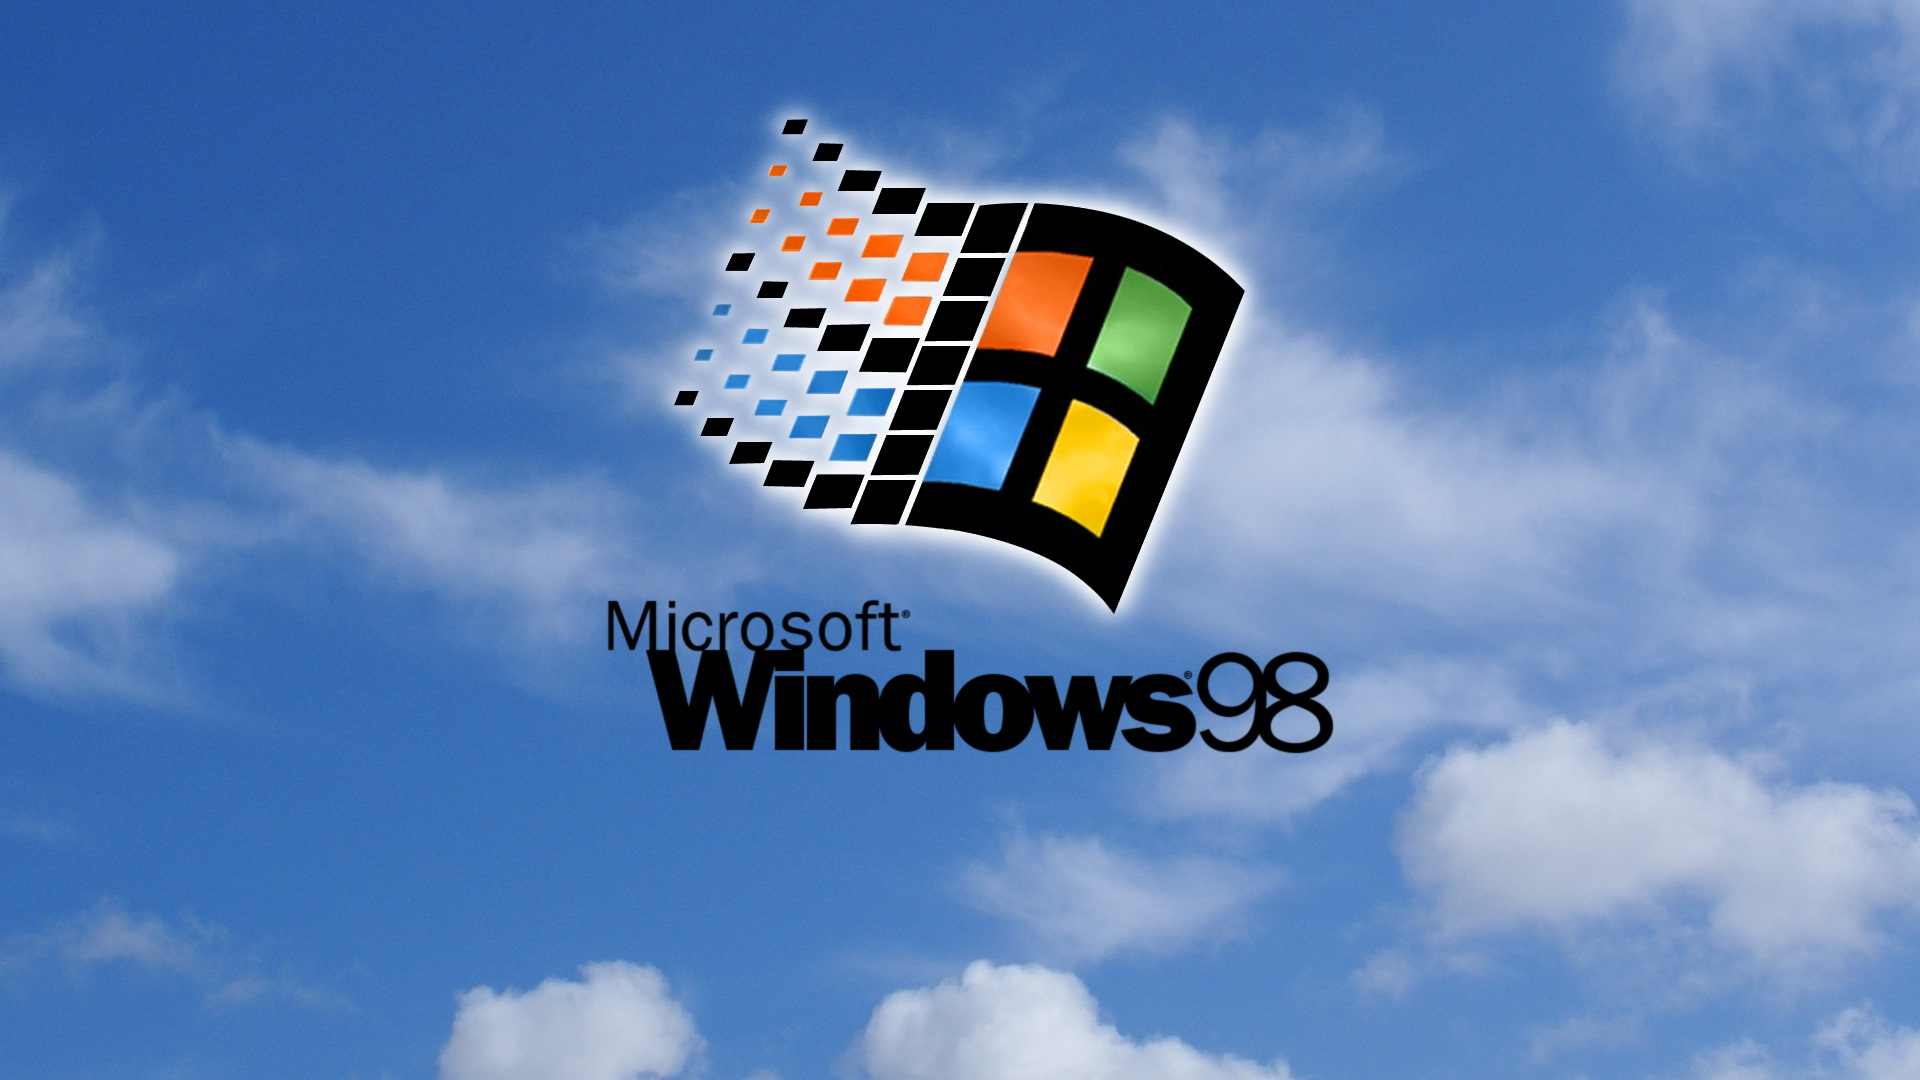 Hình nền máy tính Windows 98 sẽ giúp bạn trở thành một fan cứng của kỉ nguyên 9X. Bạn sẽ đắm chìm trong những hình ảnh đơn giản nhưng đầy ma lực, khiến cho chiếc máy tính của bạn trở nên độc đáo và khác biệt.